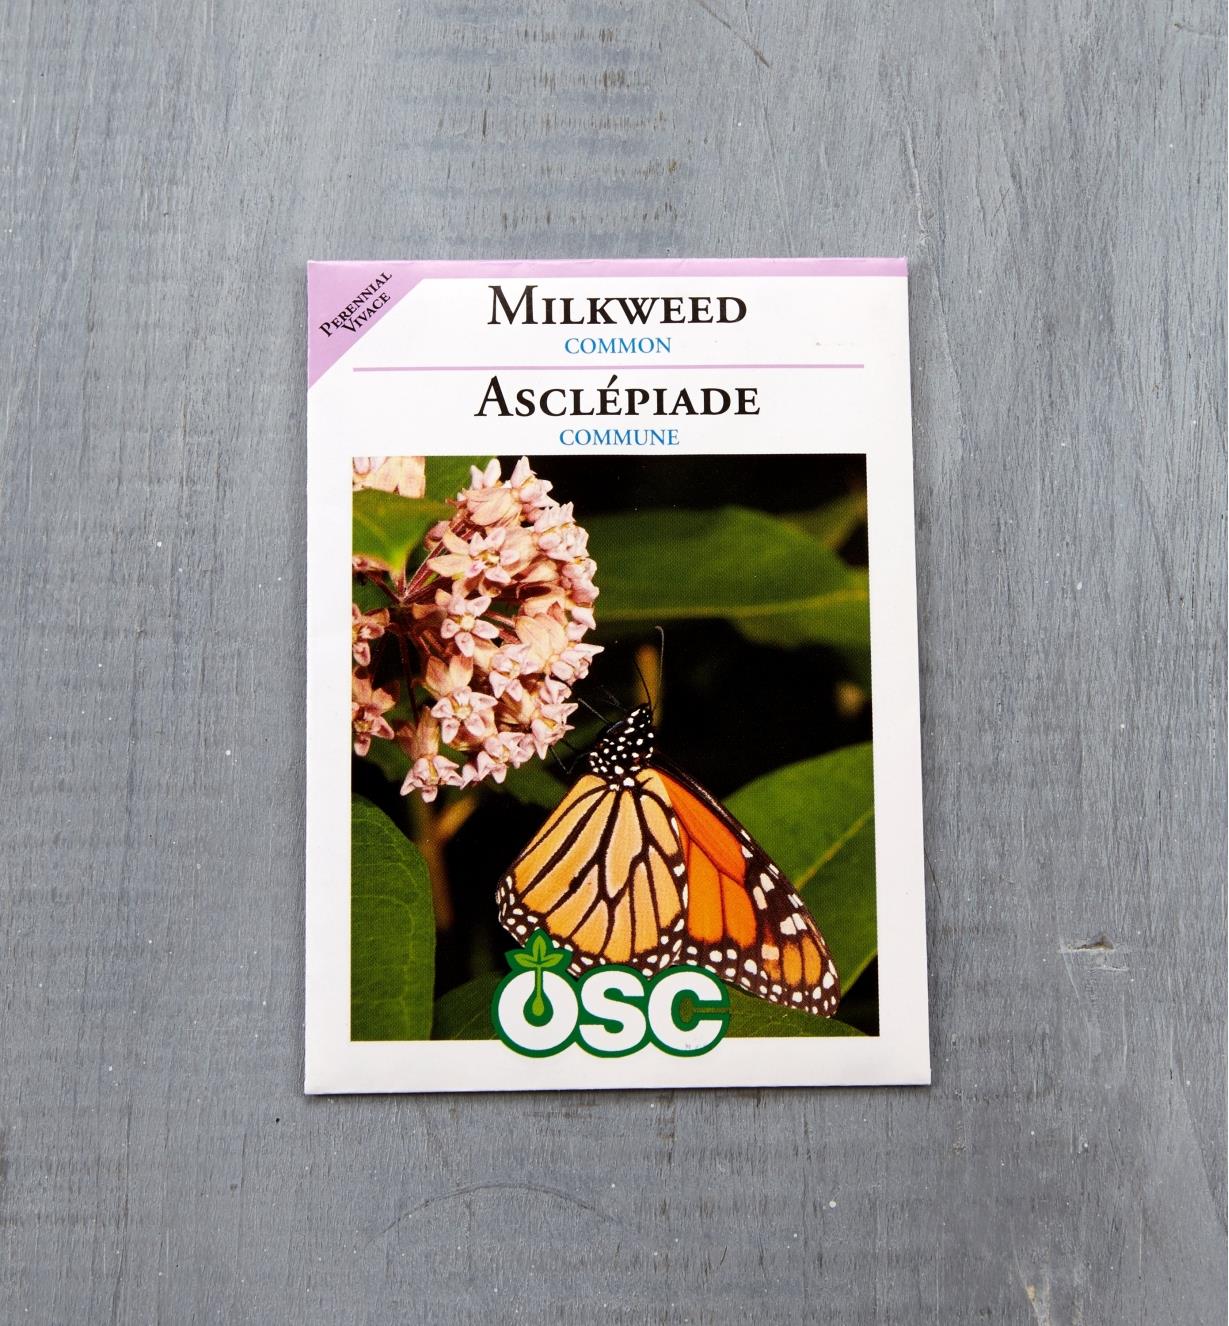 SD149 - Milkweed